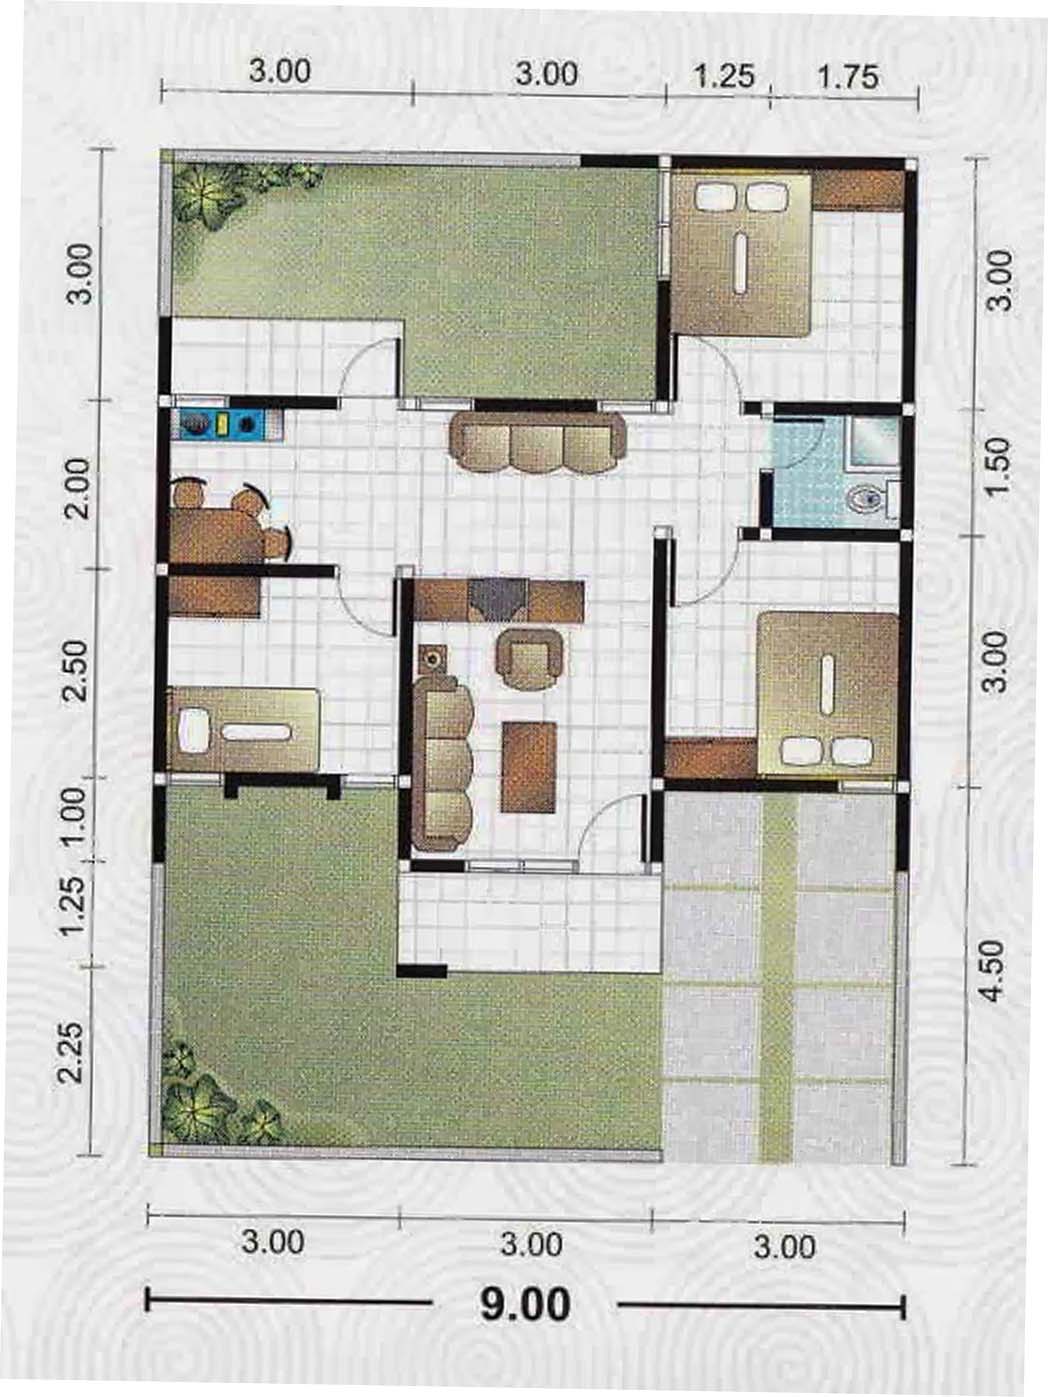 Mudah 21 Gambar Rumah Sederhana 4 Kamar 69 Dalam Ide Desain Interior Rumah dengan 21 Gambar Rumah Sederhana 4 Kamar